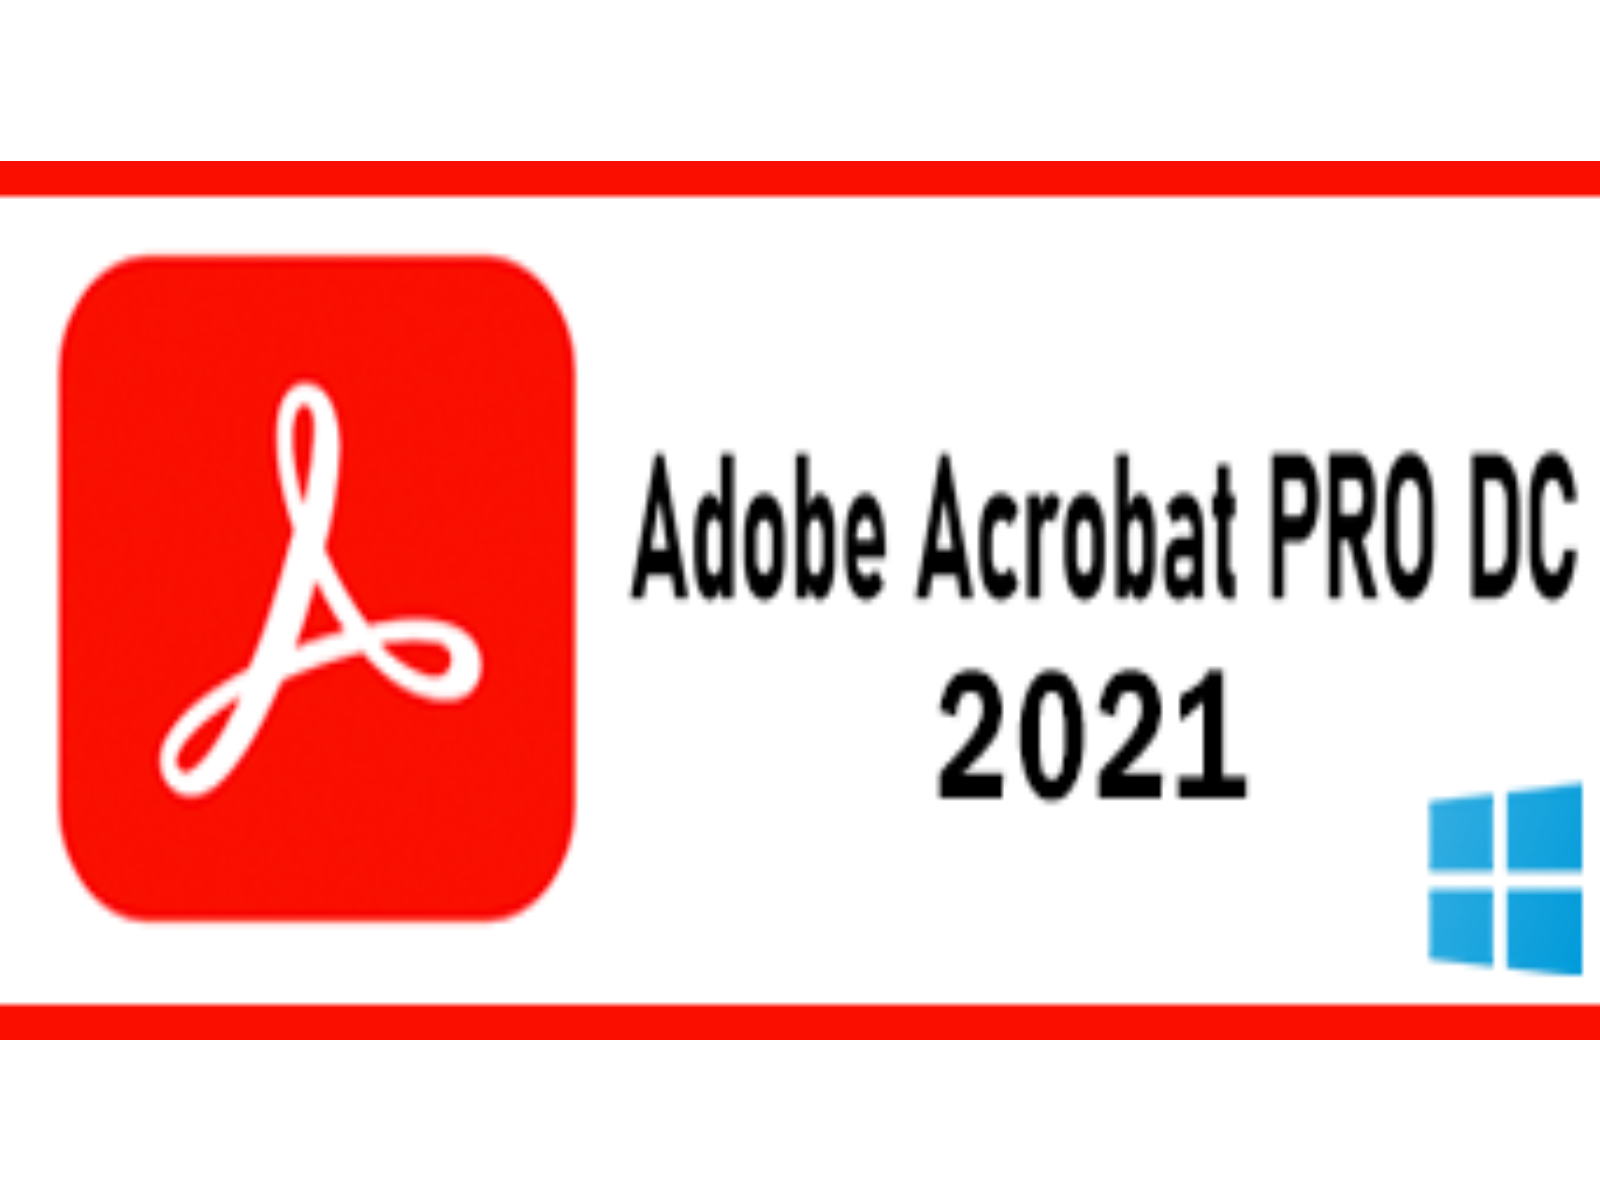 A‌c‌r‌o‌b‌a‌t PR‌O ‍D‌‍C‍ 2‌021 ‌f‌o‌r‌ ‌W‌i‌n‌d‌o‌w‌s